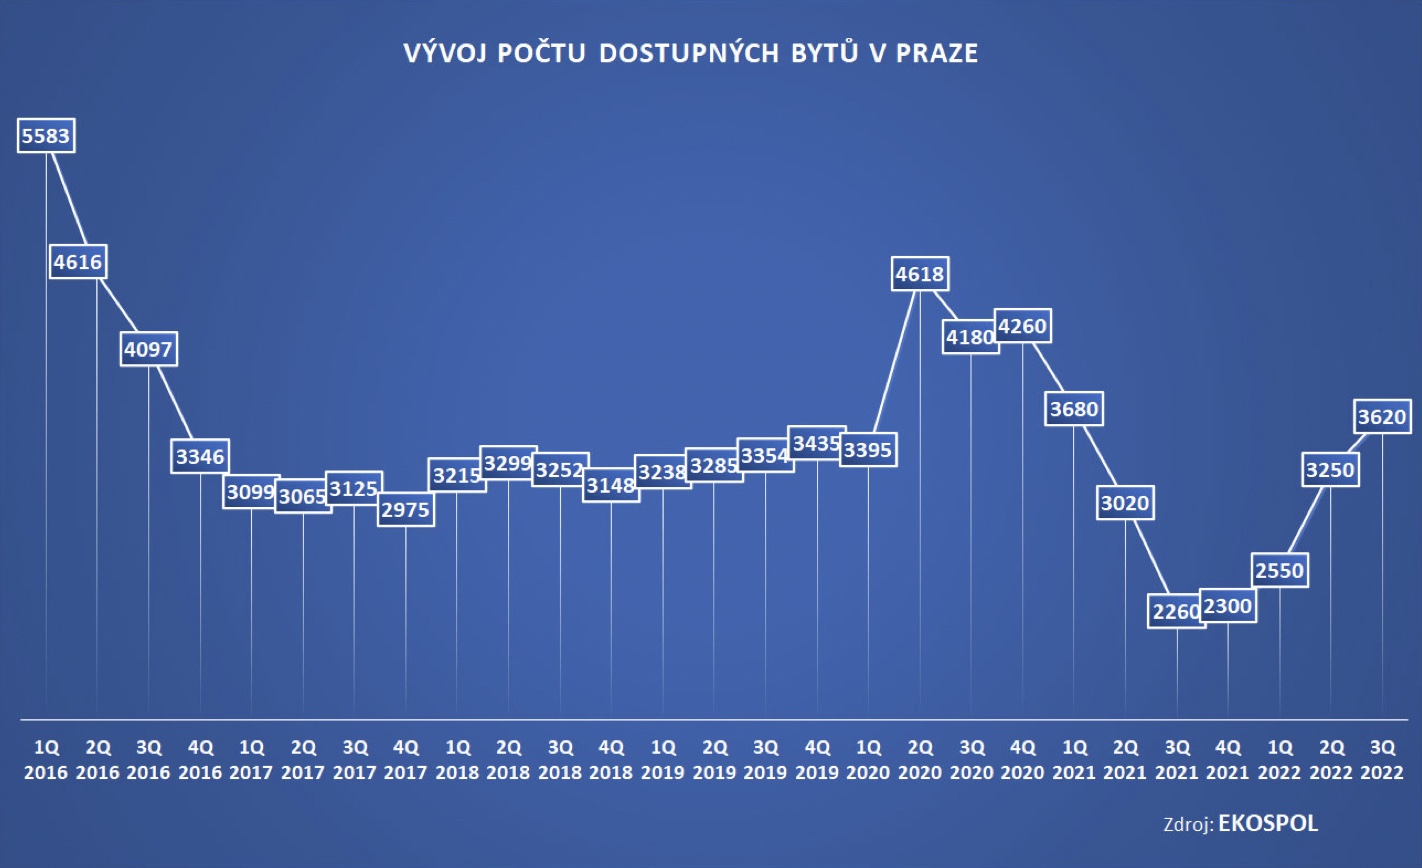 Vývoj počtu dostupných bytů v Praze 2016-2022